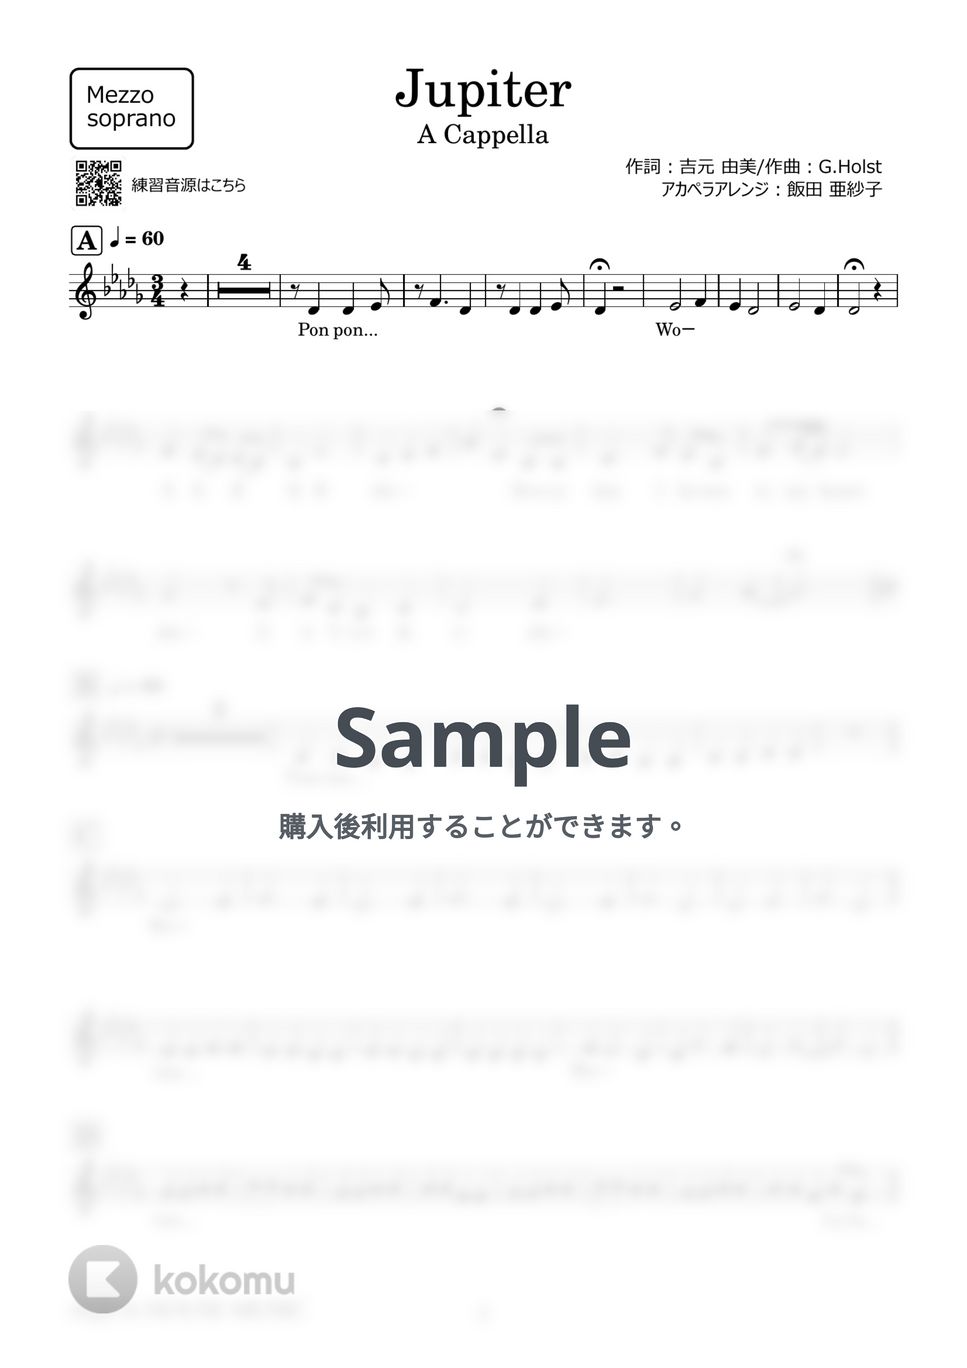 平原 綾香 - Jupiter (アカペラ楽譜♪MezzoSopranoパート譜) by 飯田 亜紗子